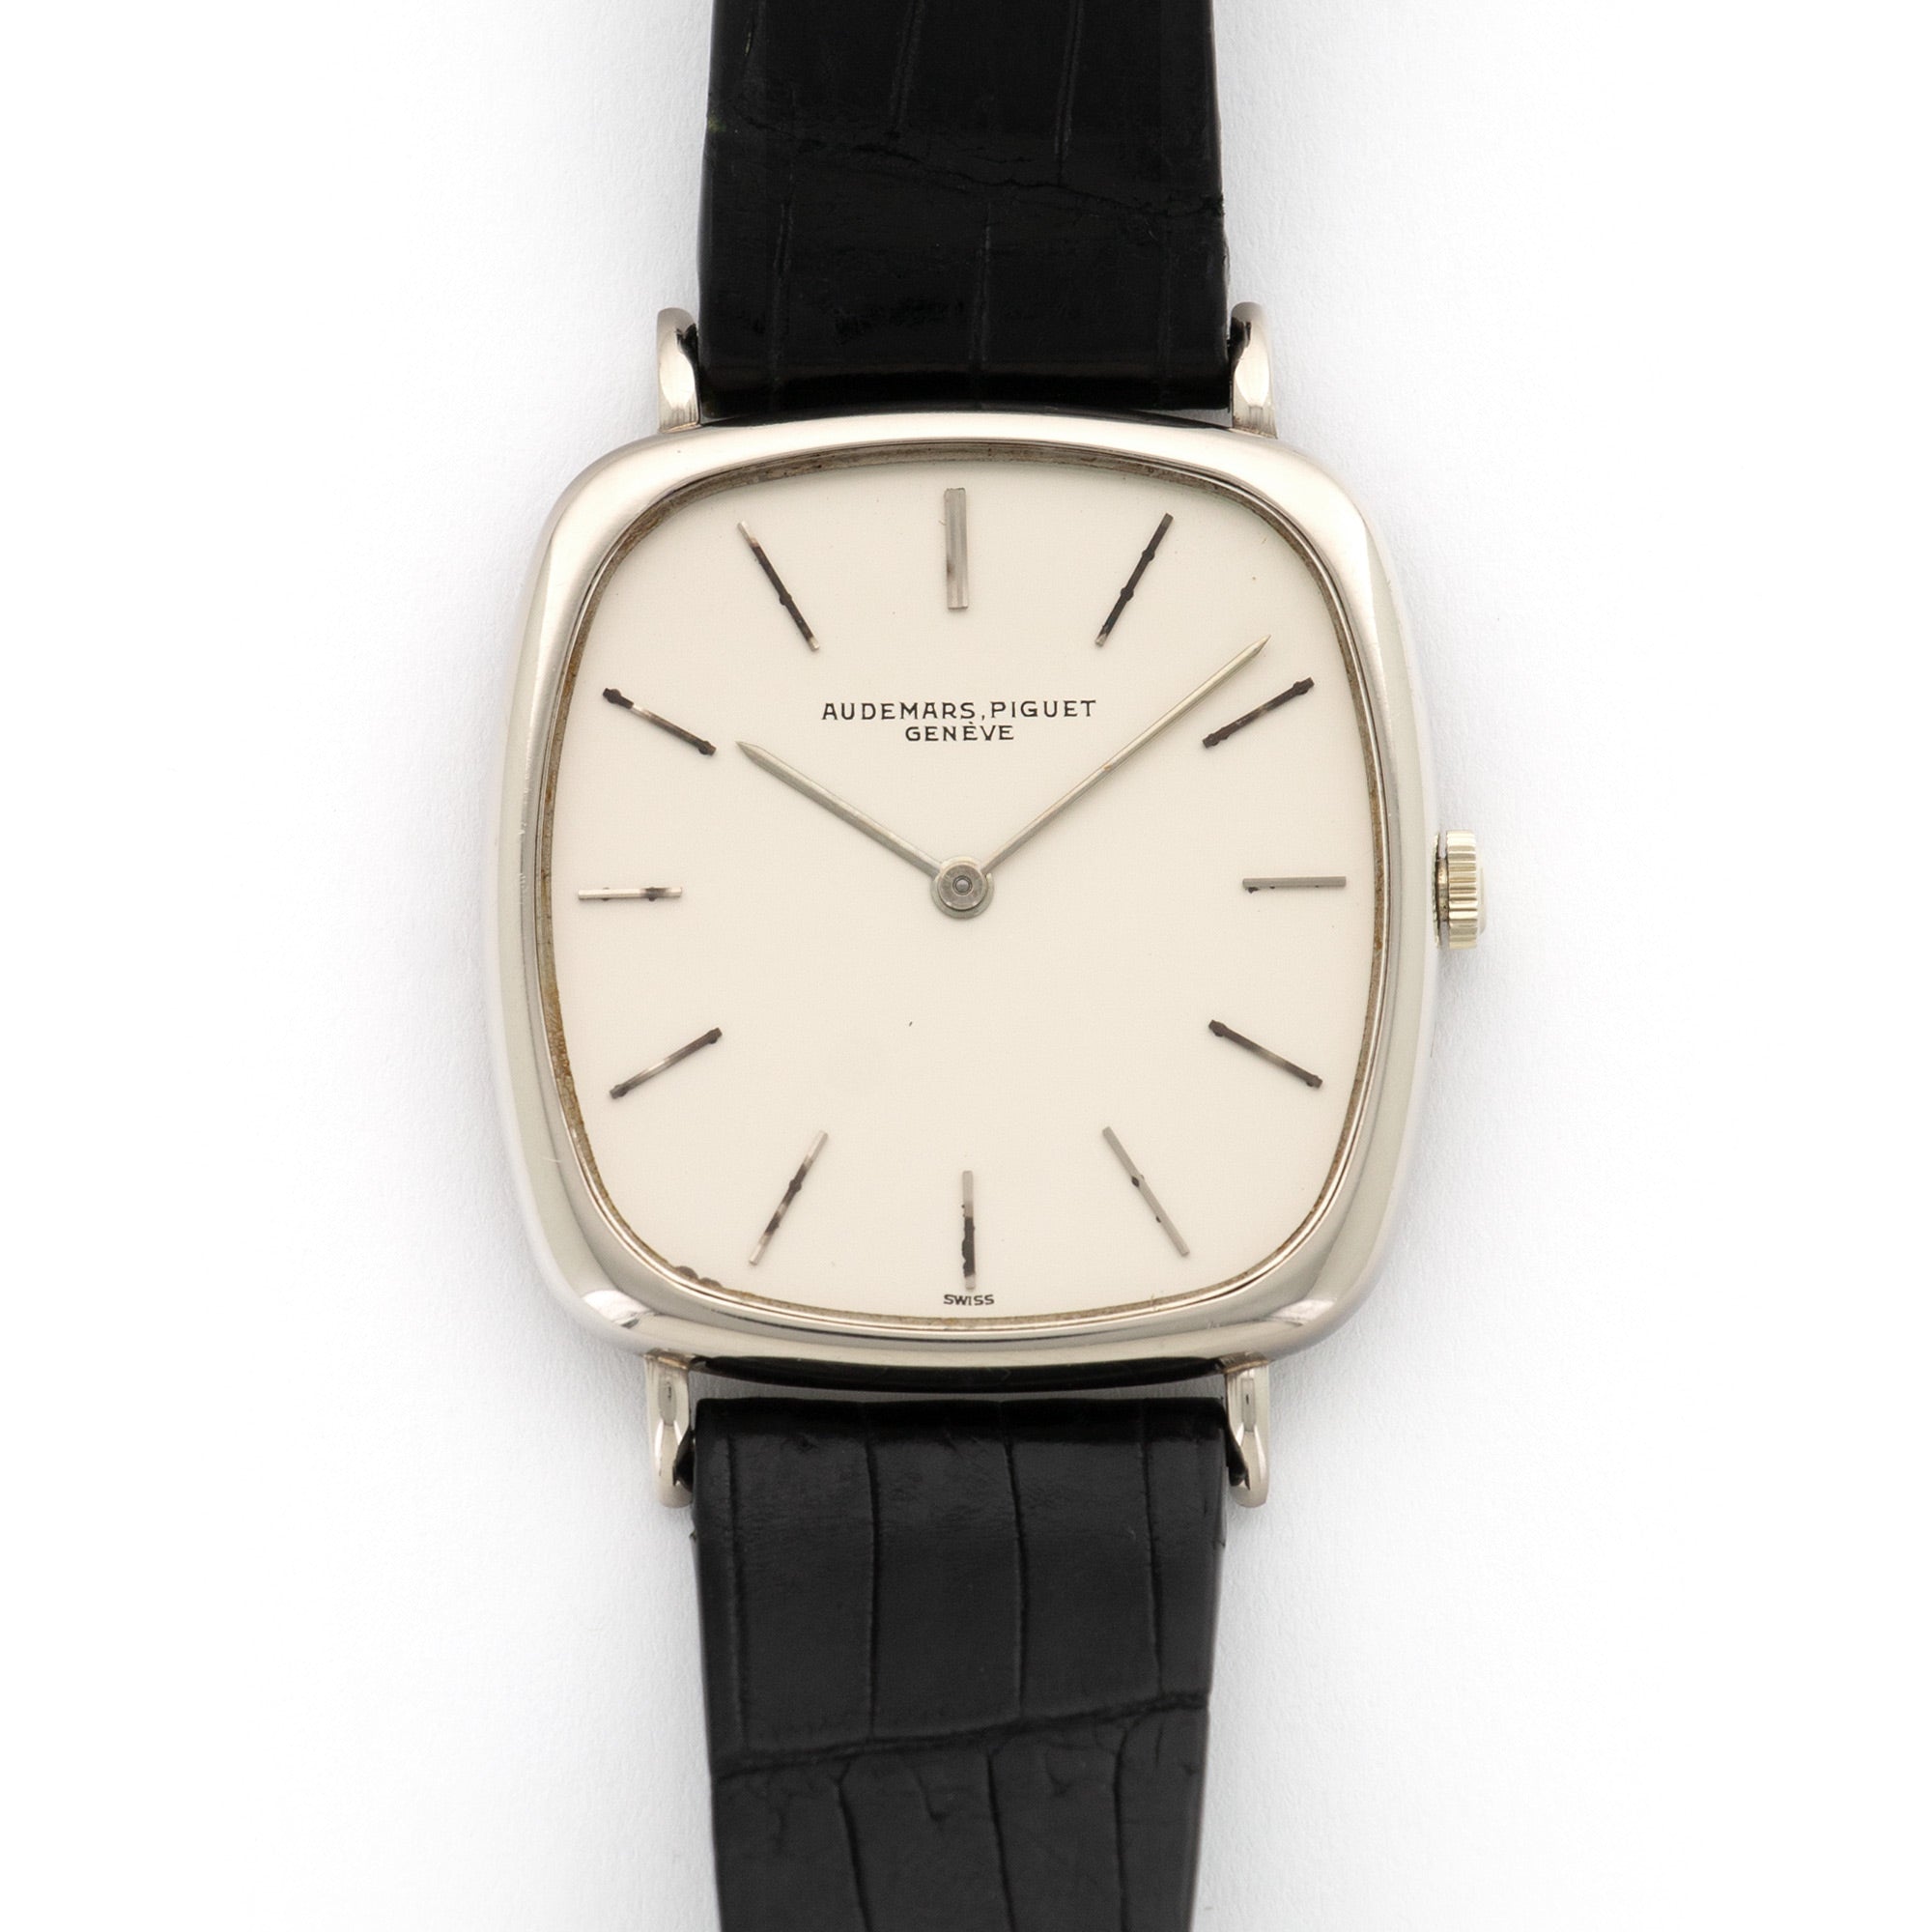 Audemars Piguet - Audemars Piguet White Gold Cushion-Shaped Watch - The Keystone Watches